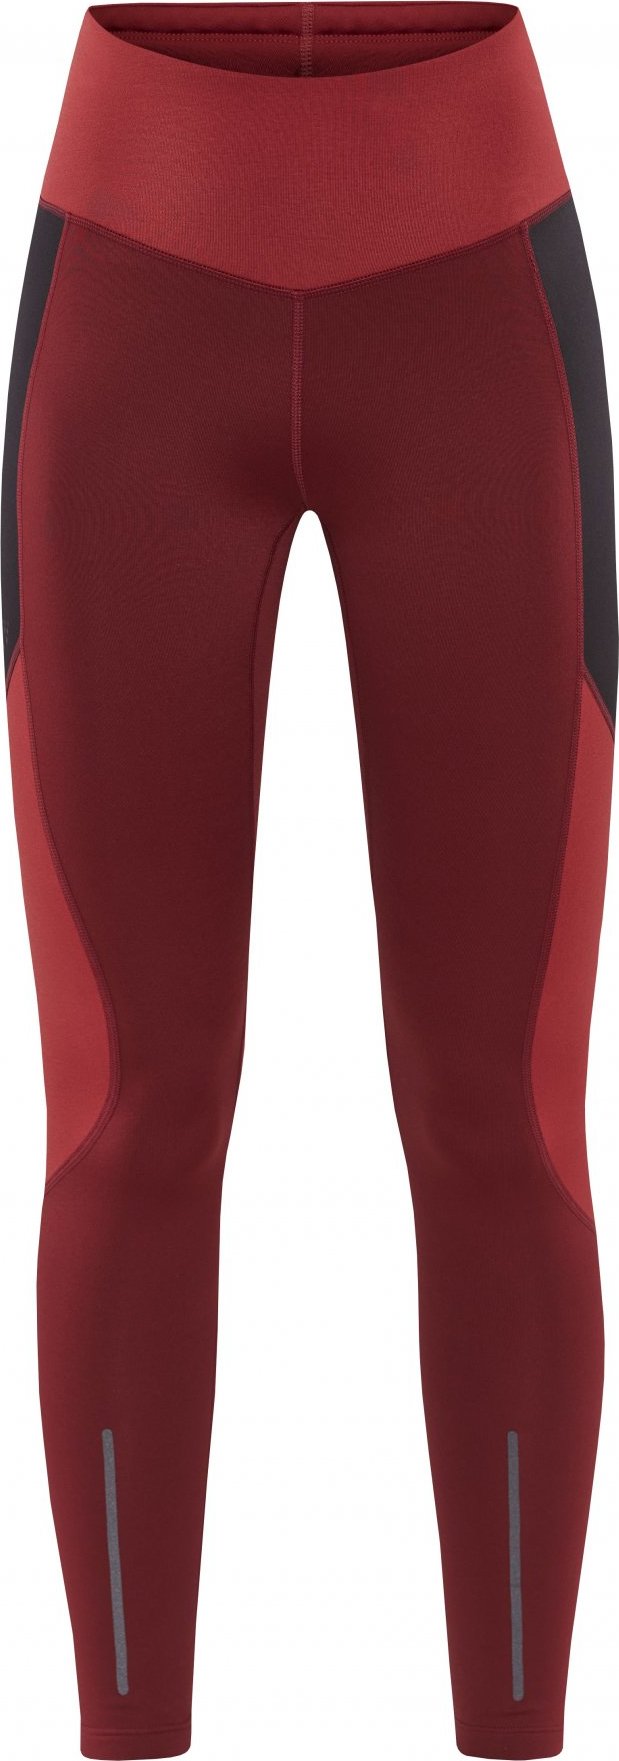 Dámské elastické kalhoty CRAFT Adv Essence Warm Tights červené Velikost: XS